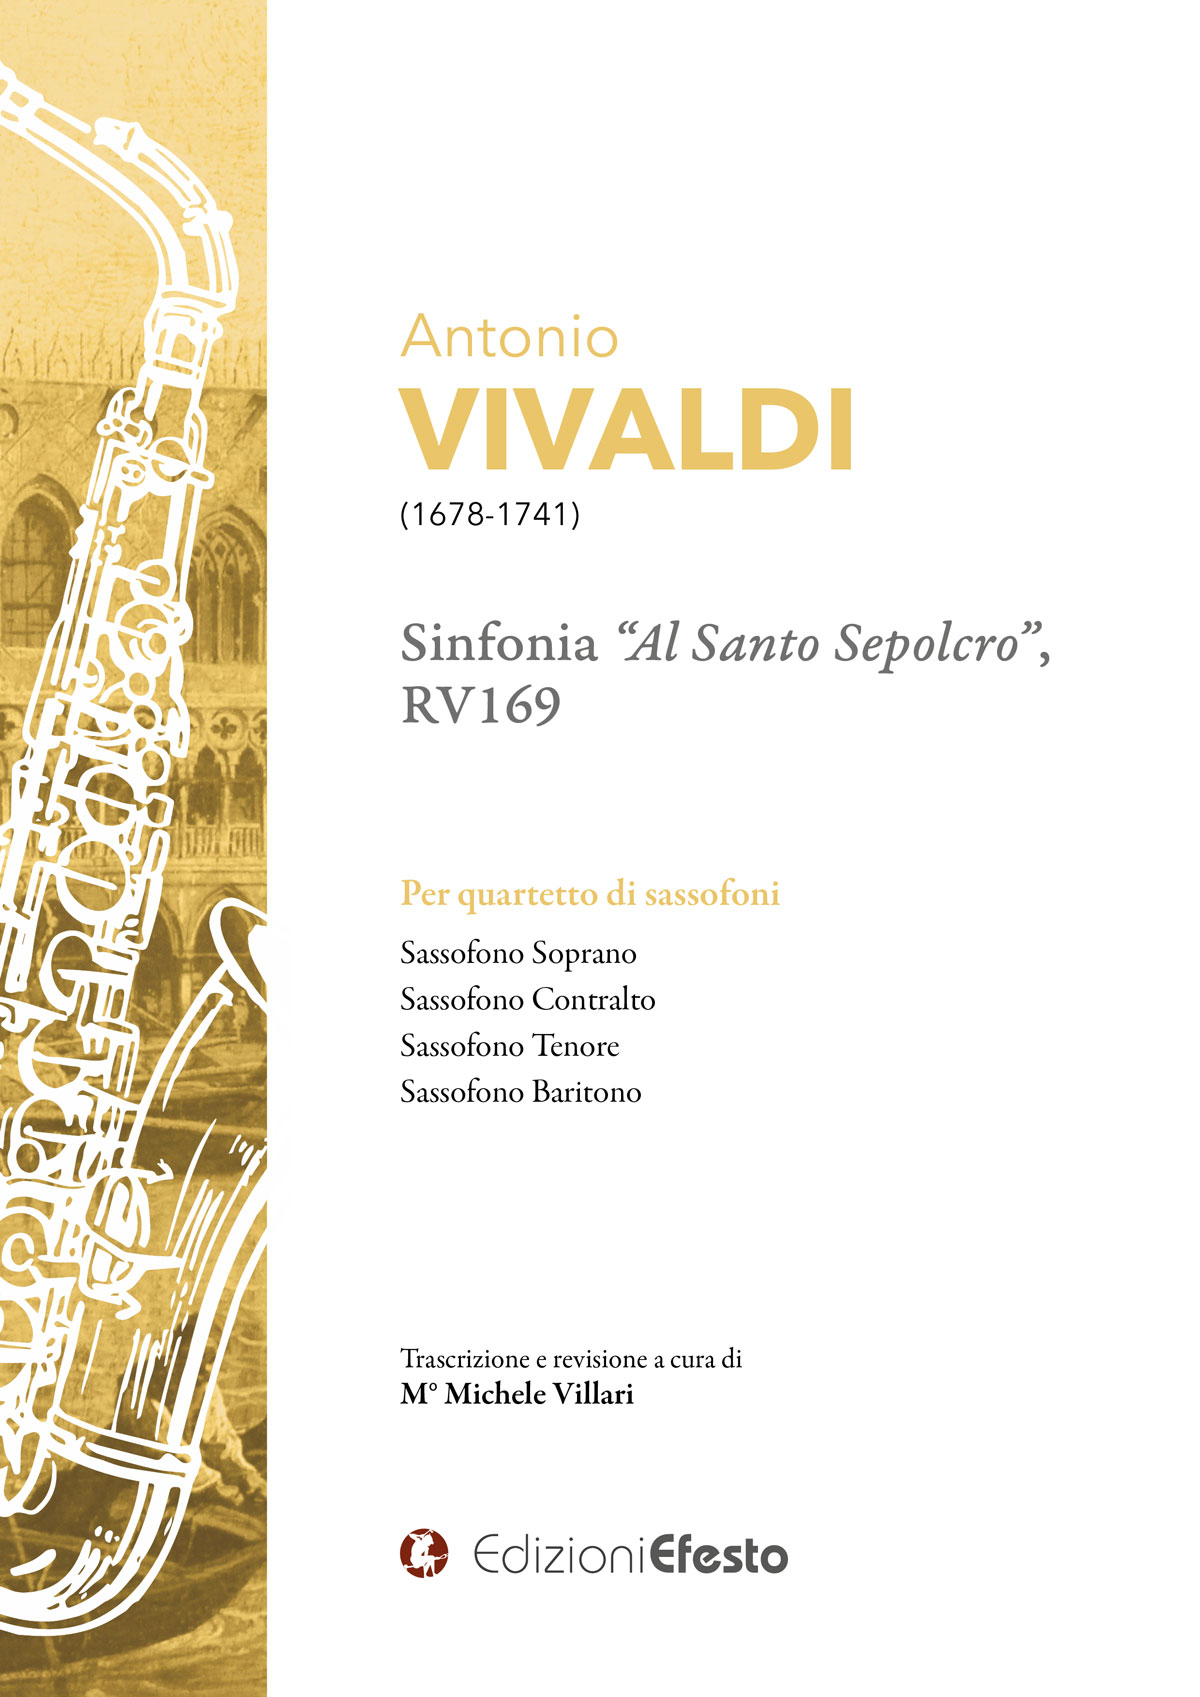 Copertina di ANTONIO VIVALDI SINFONIA “AL SANTO SEPOLCRO”, RV169 Per quartetto di sassofoni